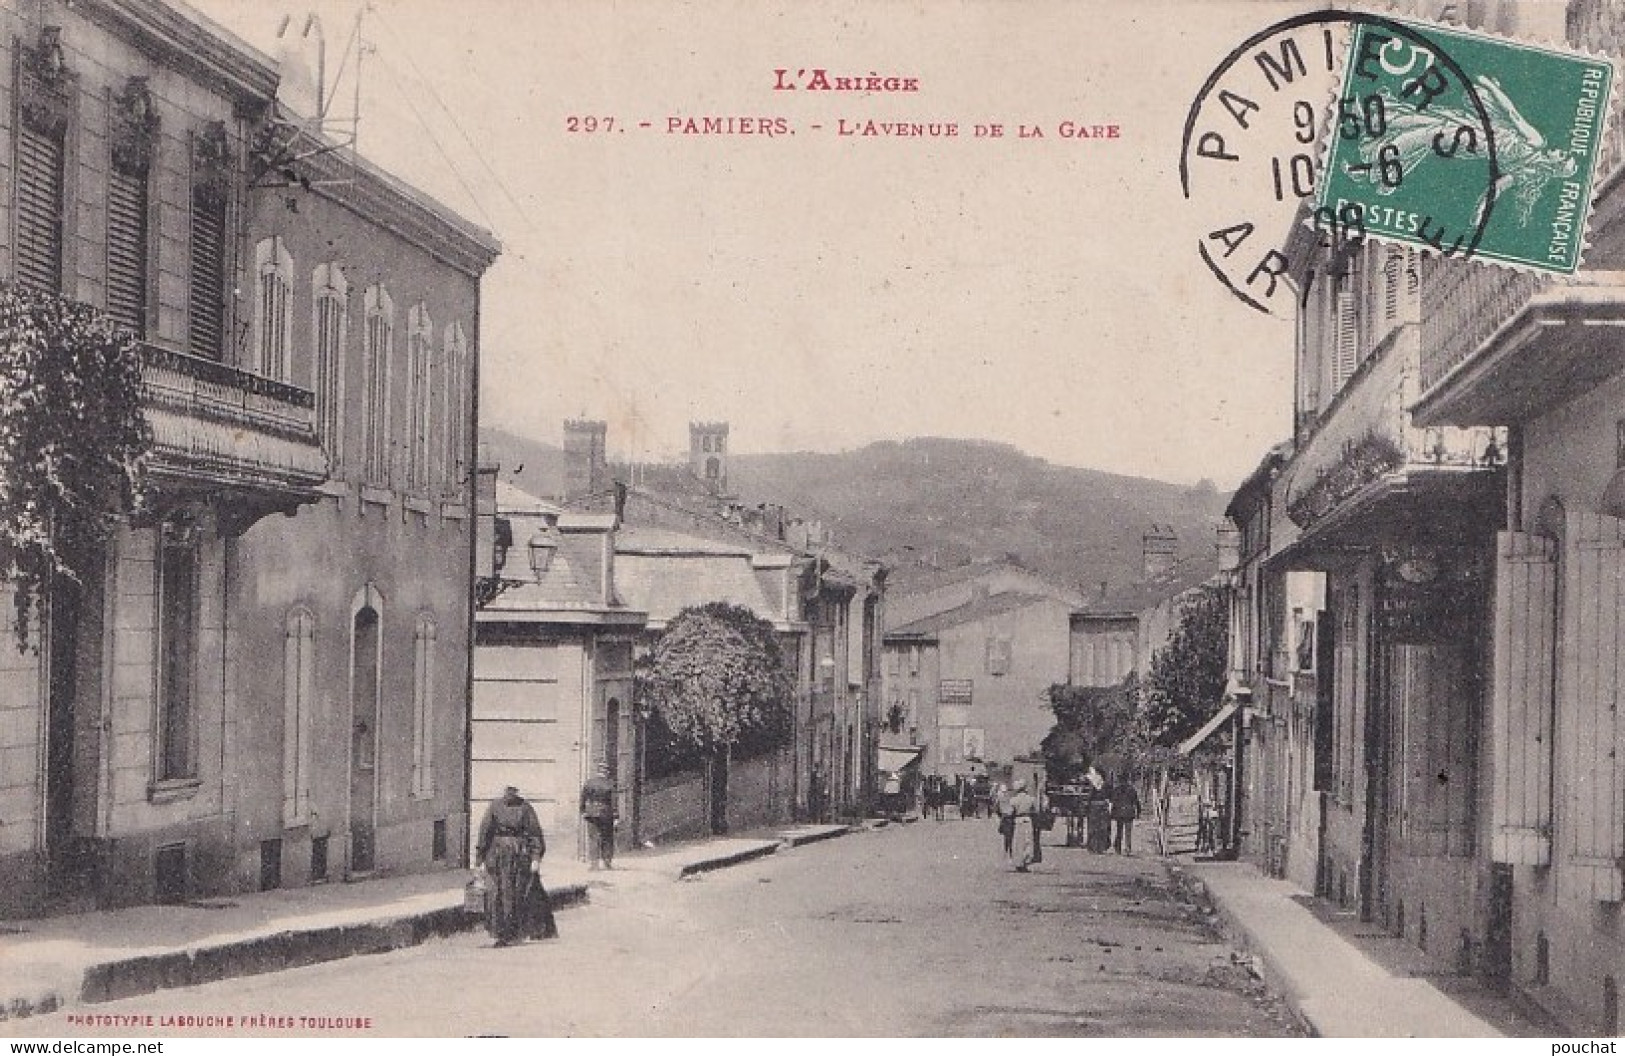  F24-09) PAMIERS (ARIEGE) L'AVENUE DE LA GARE - ANIMEE - HABITANTS - EN 1908 - Pamiers